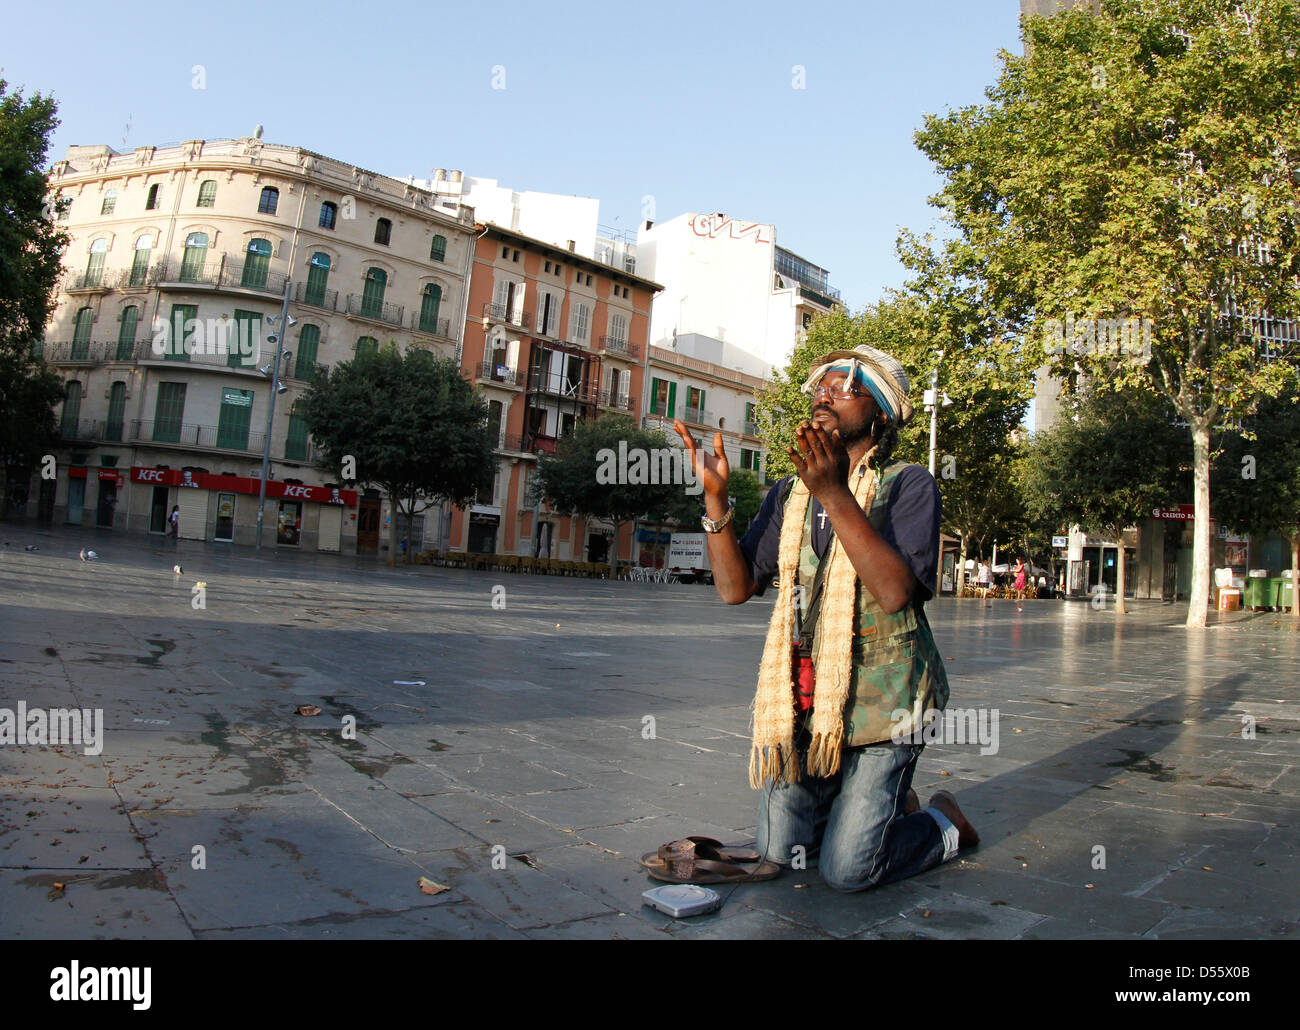 Turszy, un disoccupato e senzatetto immigrato nigeriano che spostata in Spagna nel 1997 prega su una piazza centrale di Palma Foto Stock